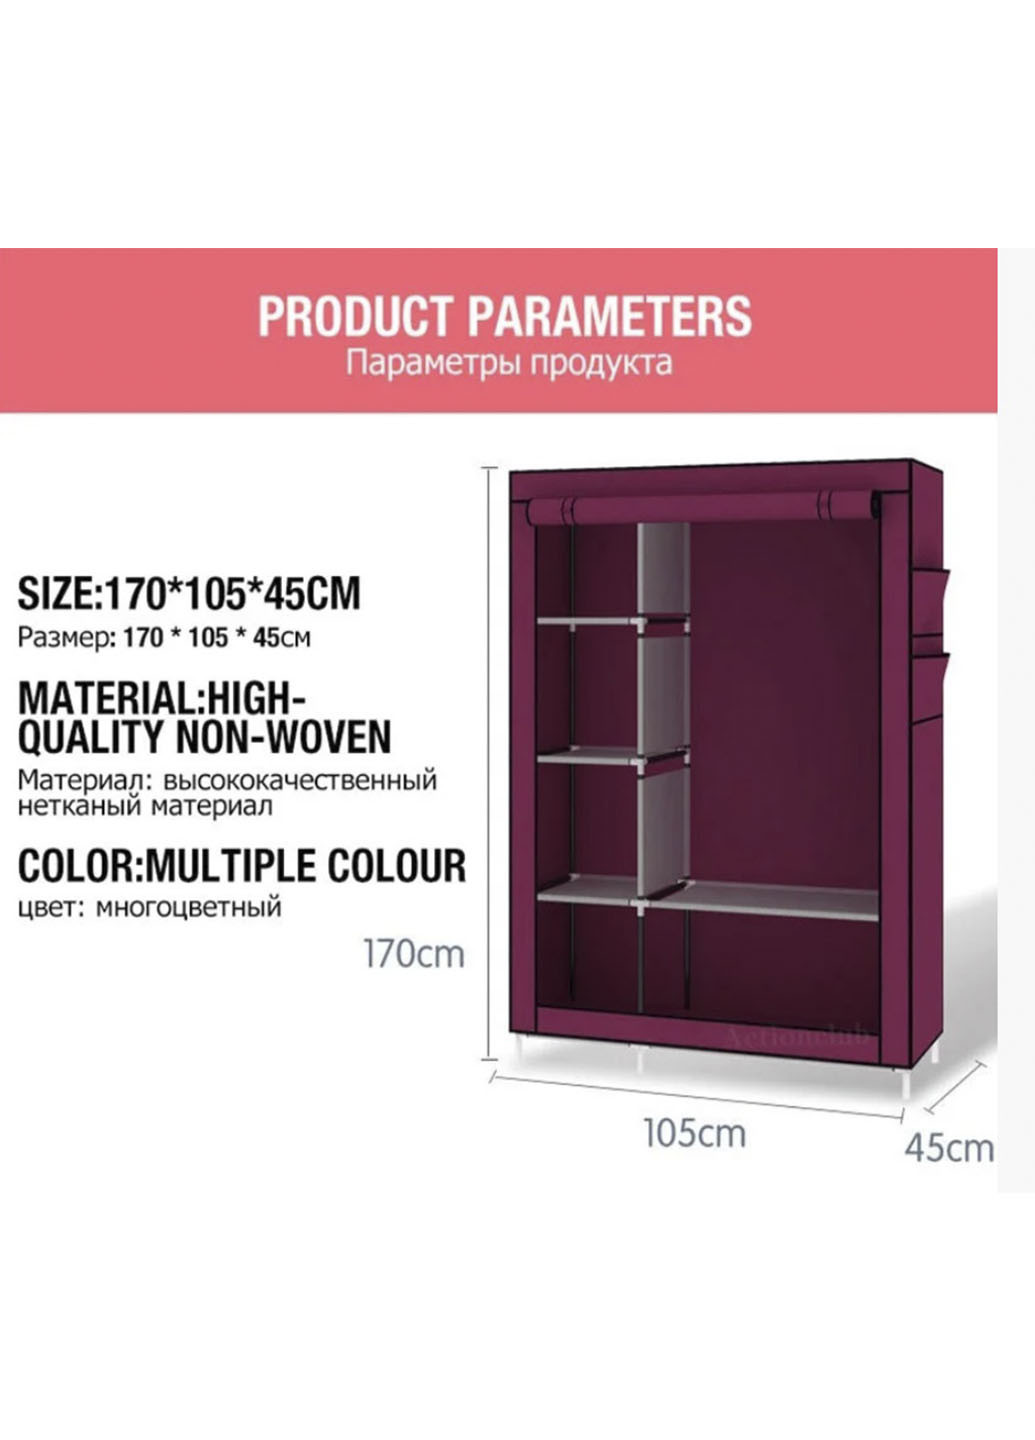 Тканинна шафа складана STORAGE WARDROBE KM-105 на 2 секції (106х45х170 см), органайзер для одягу Rozia червона